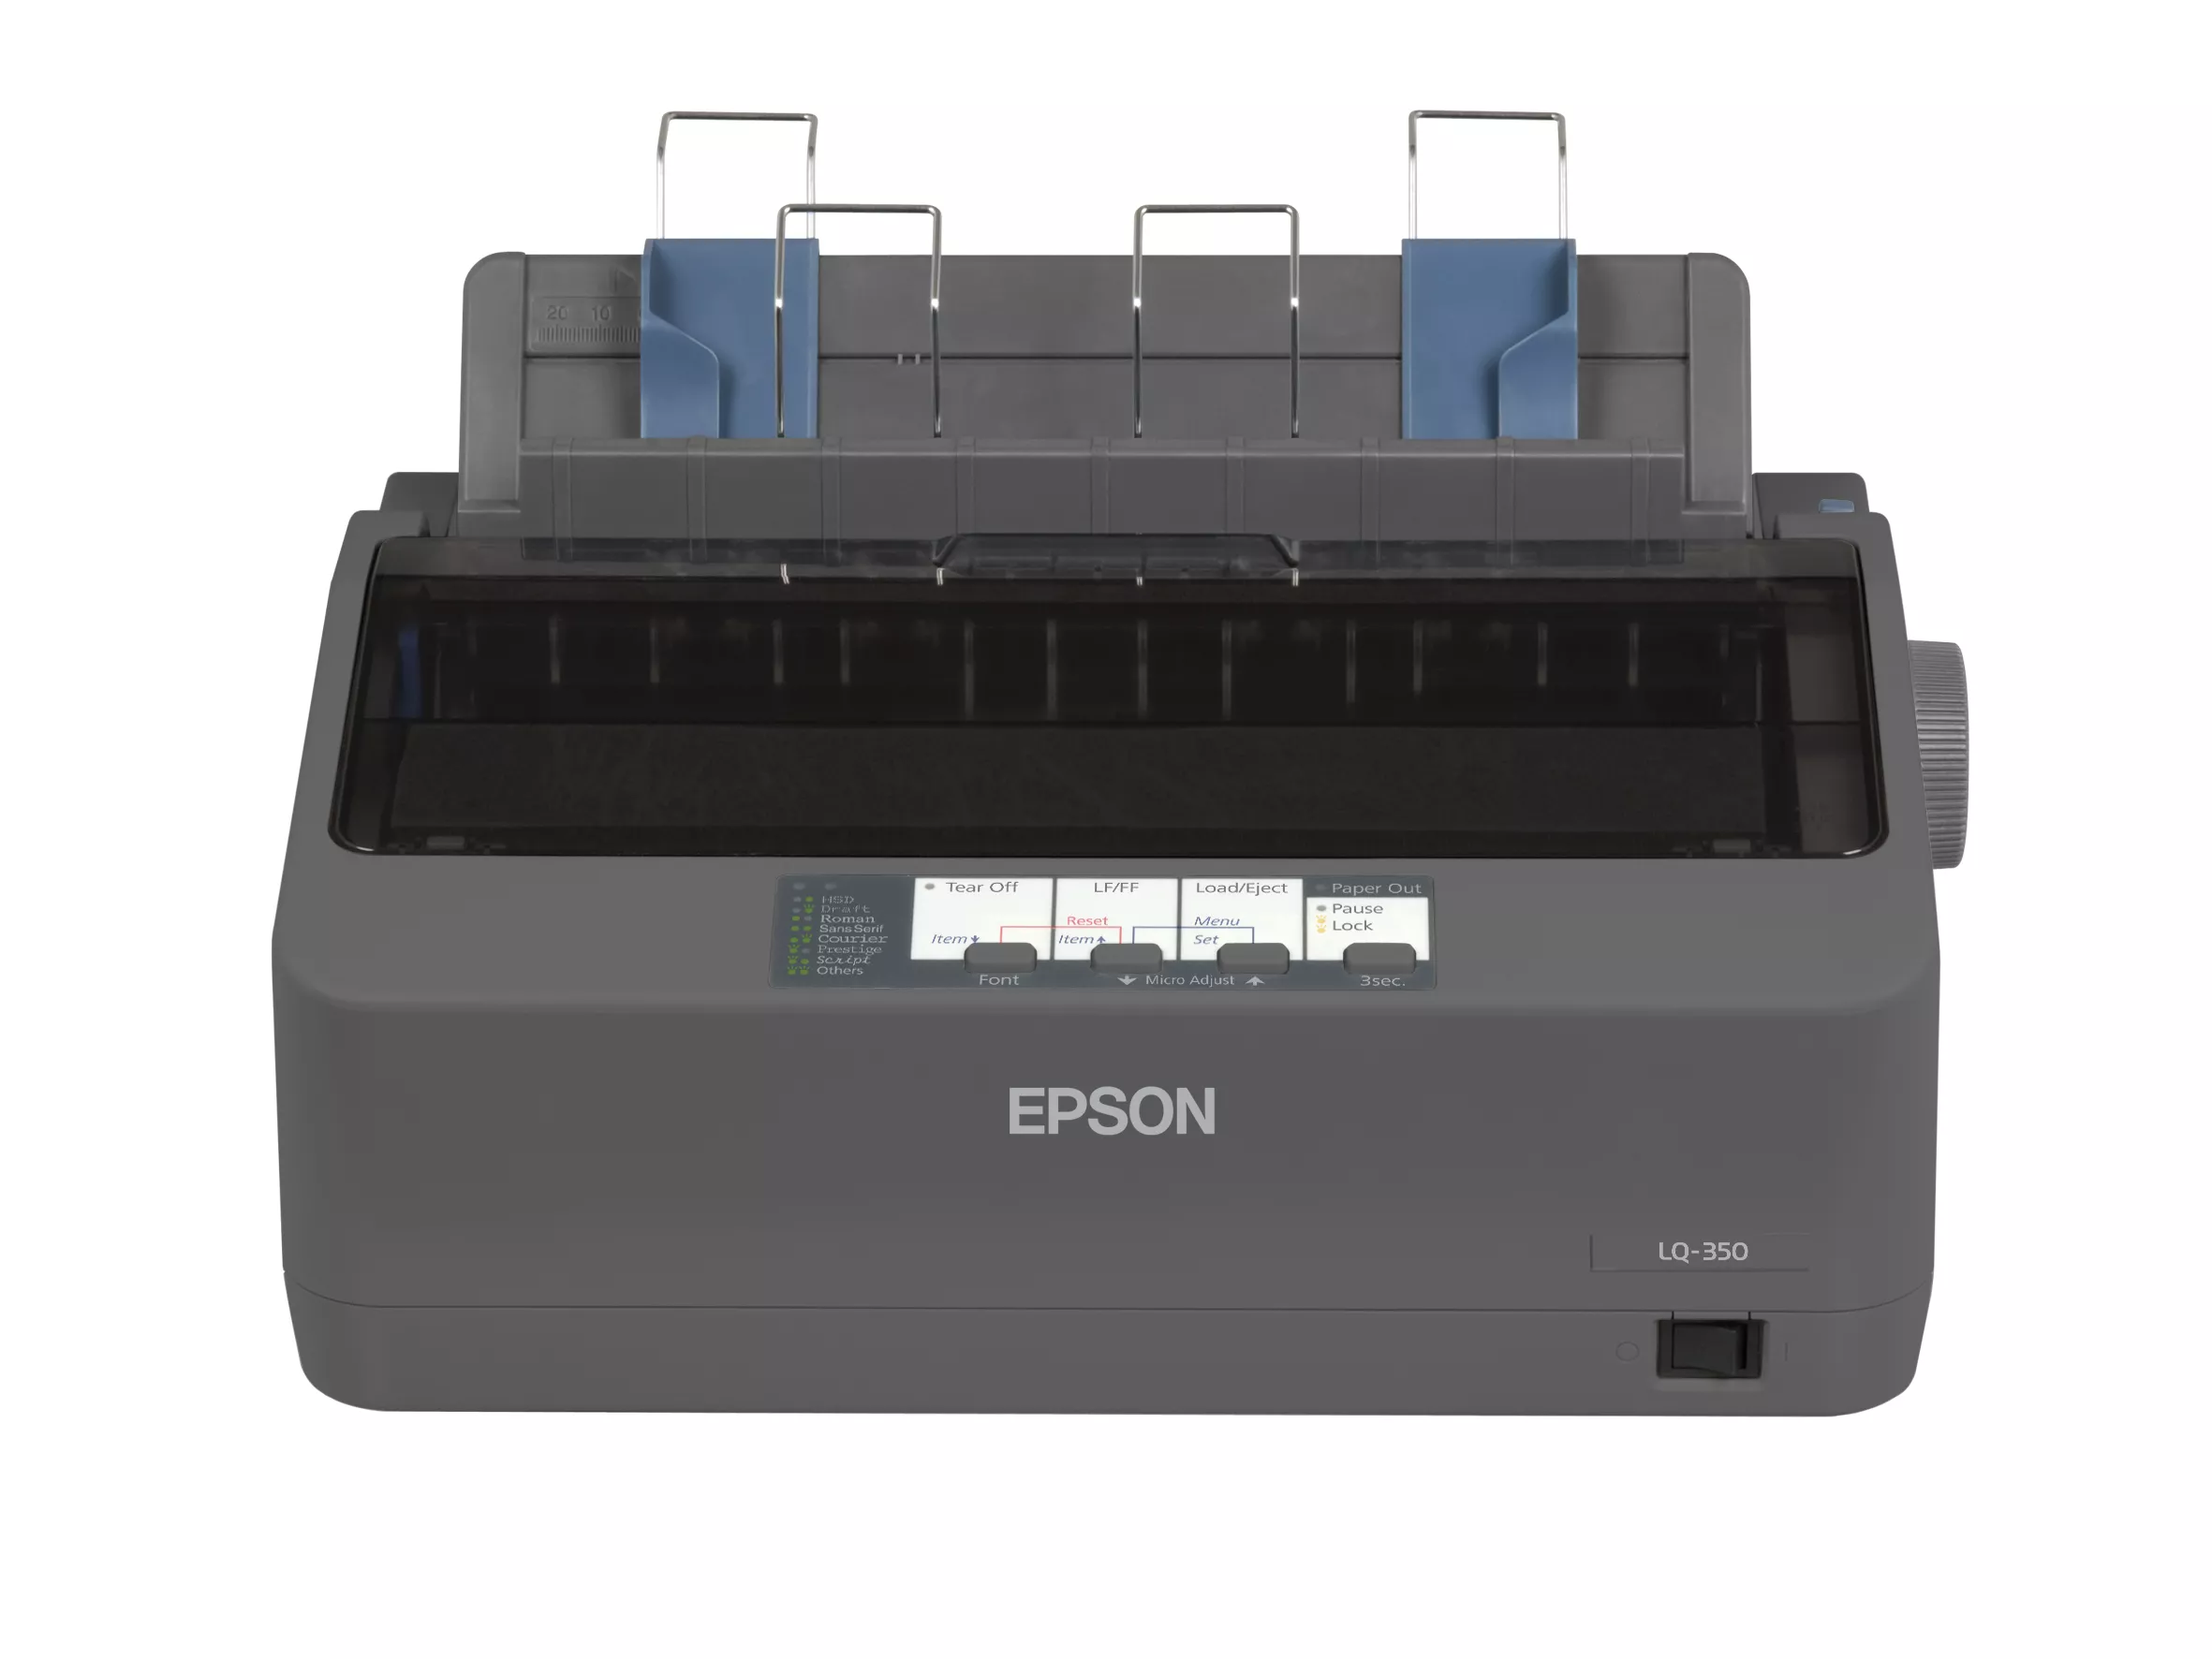 Vente EPSON LQ 350 Printer Mono B/W dot-matrix 24 Epson au meilleur prix - visuel 2